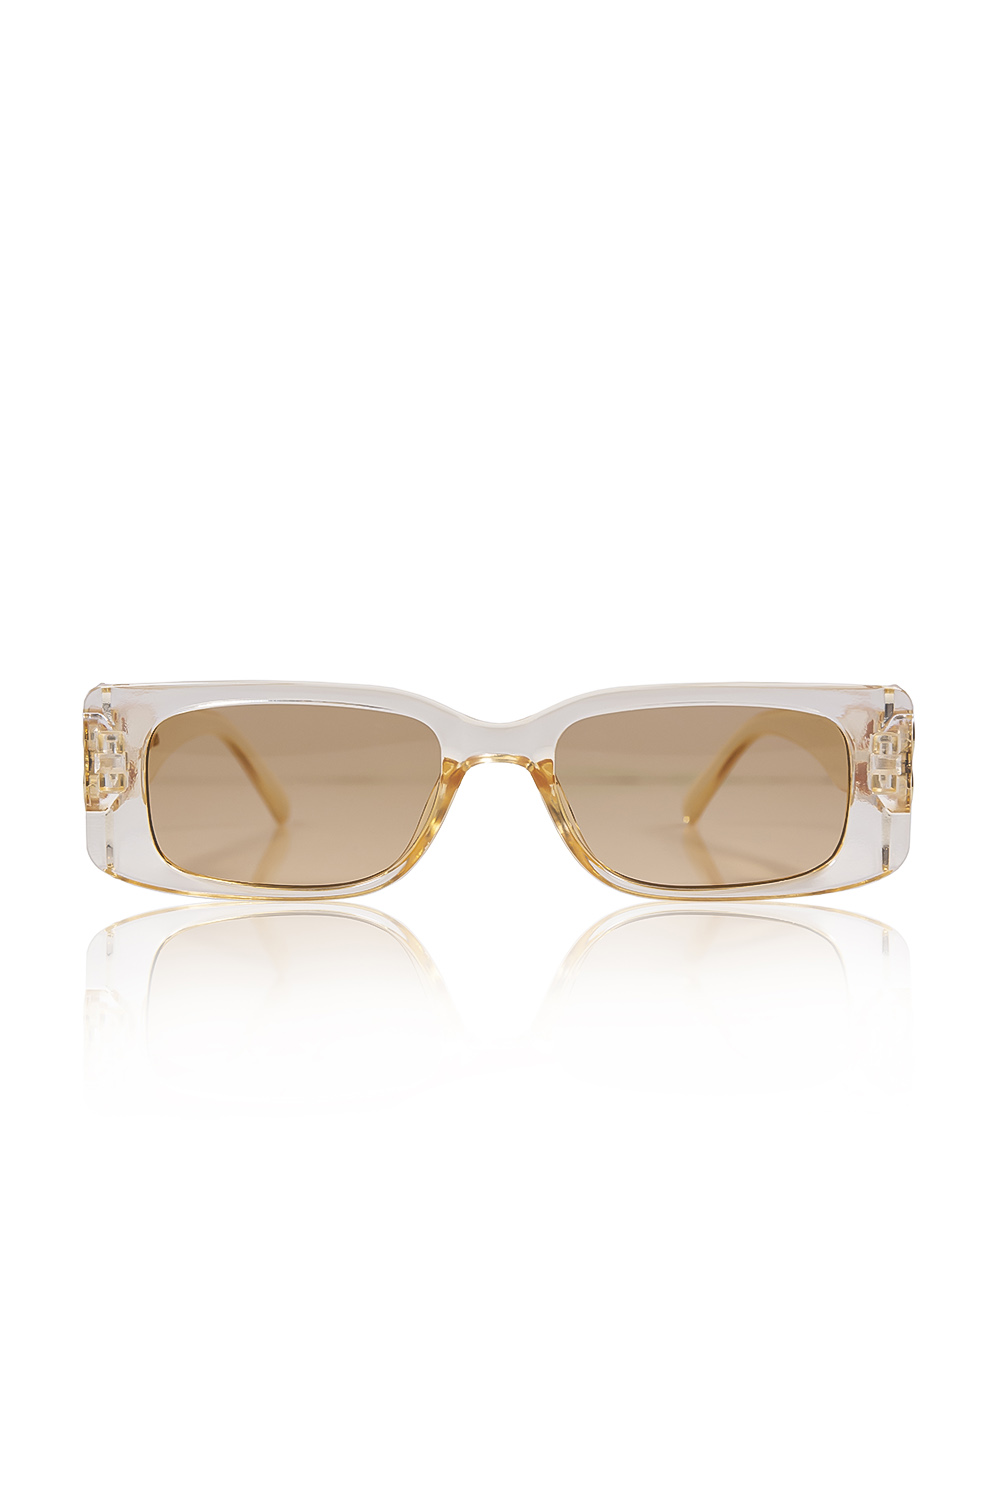 Σαμπανιζέ γυαλιά ηλίου ορθογώνια με χρυσή λεπτομέρεια